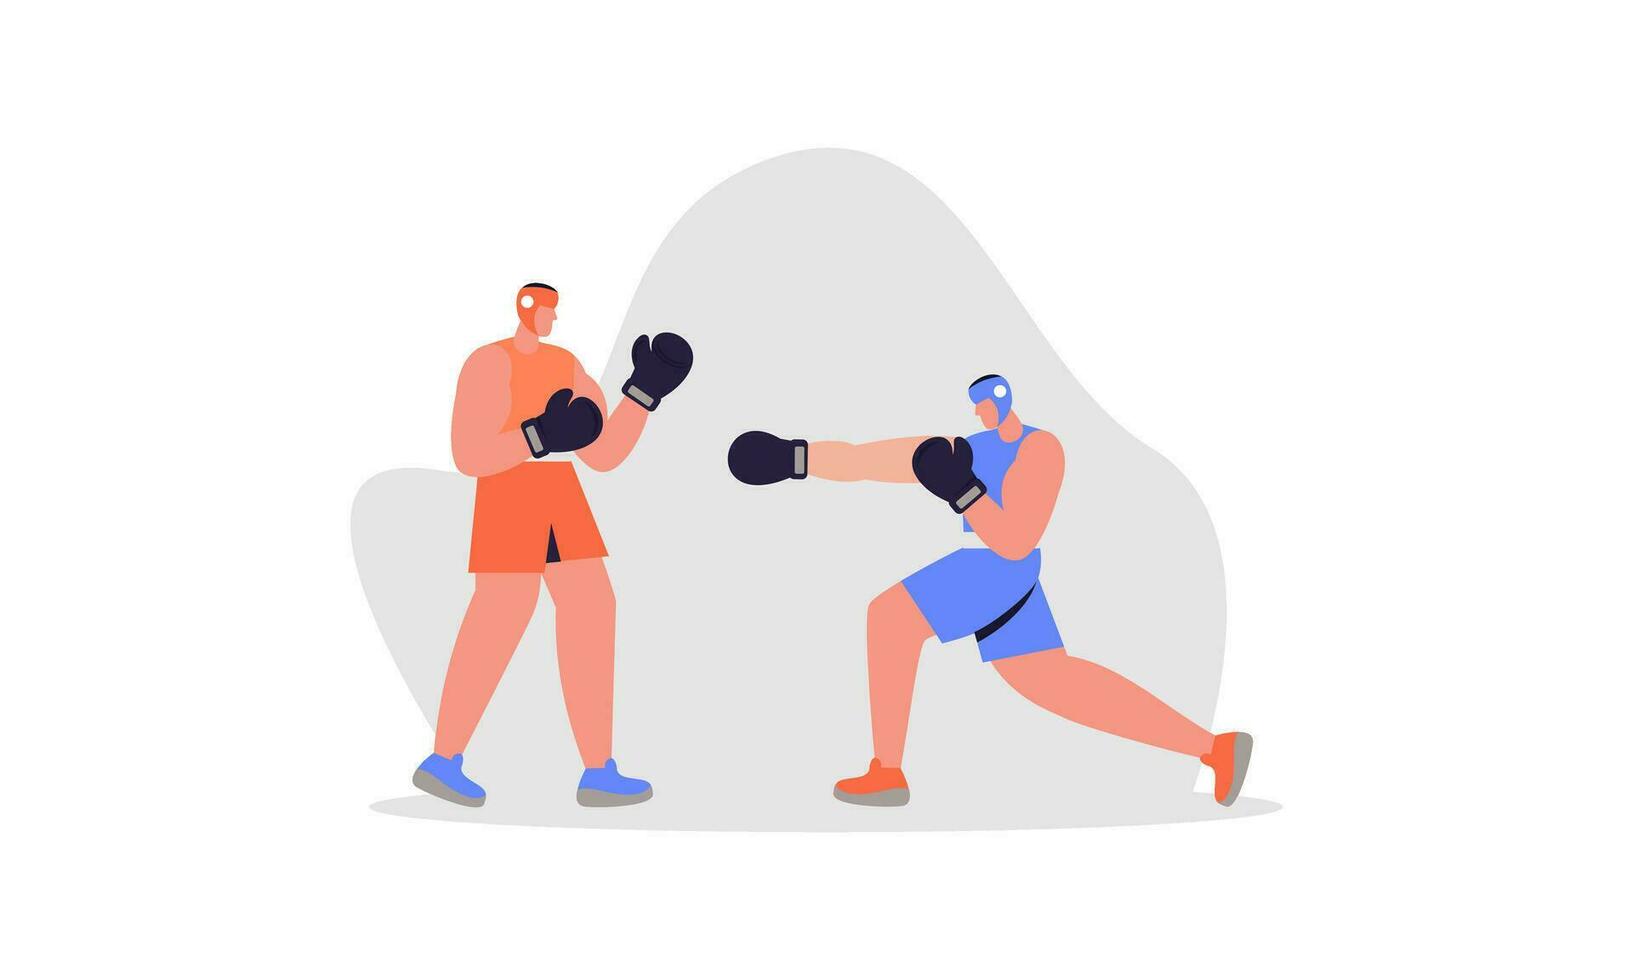 boxe esporte ilustração conceito vetor